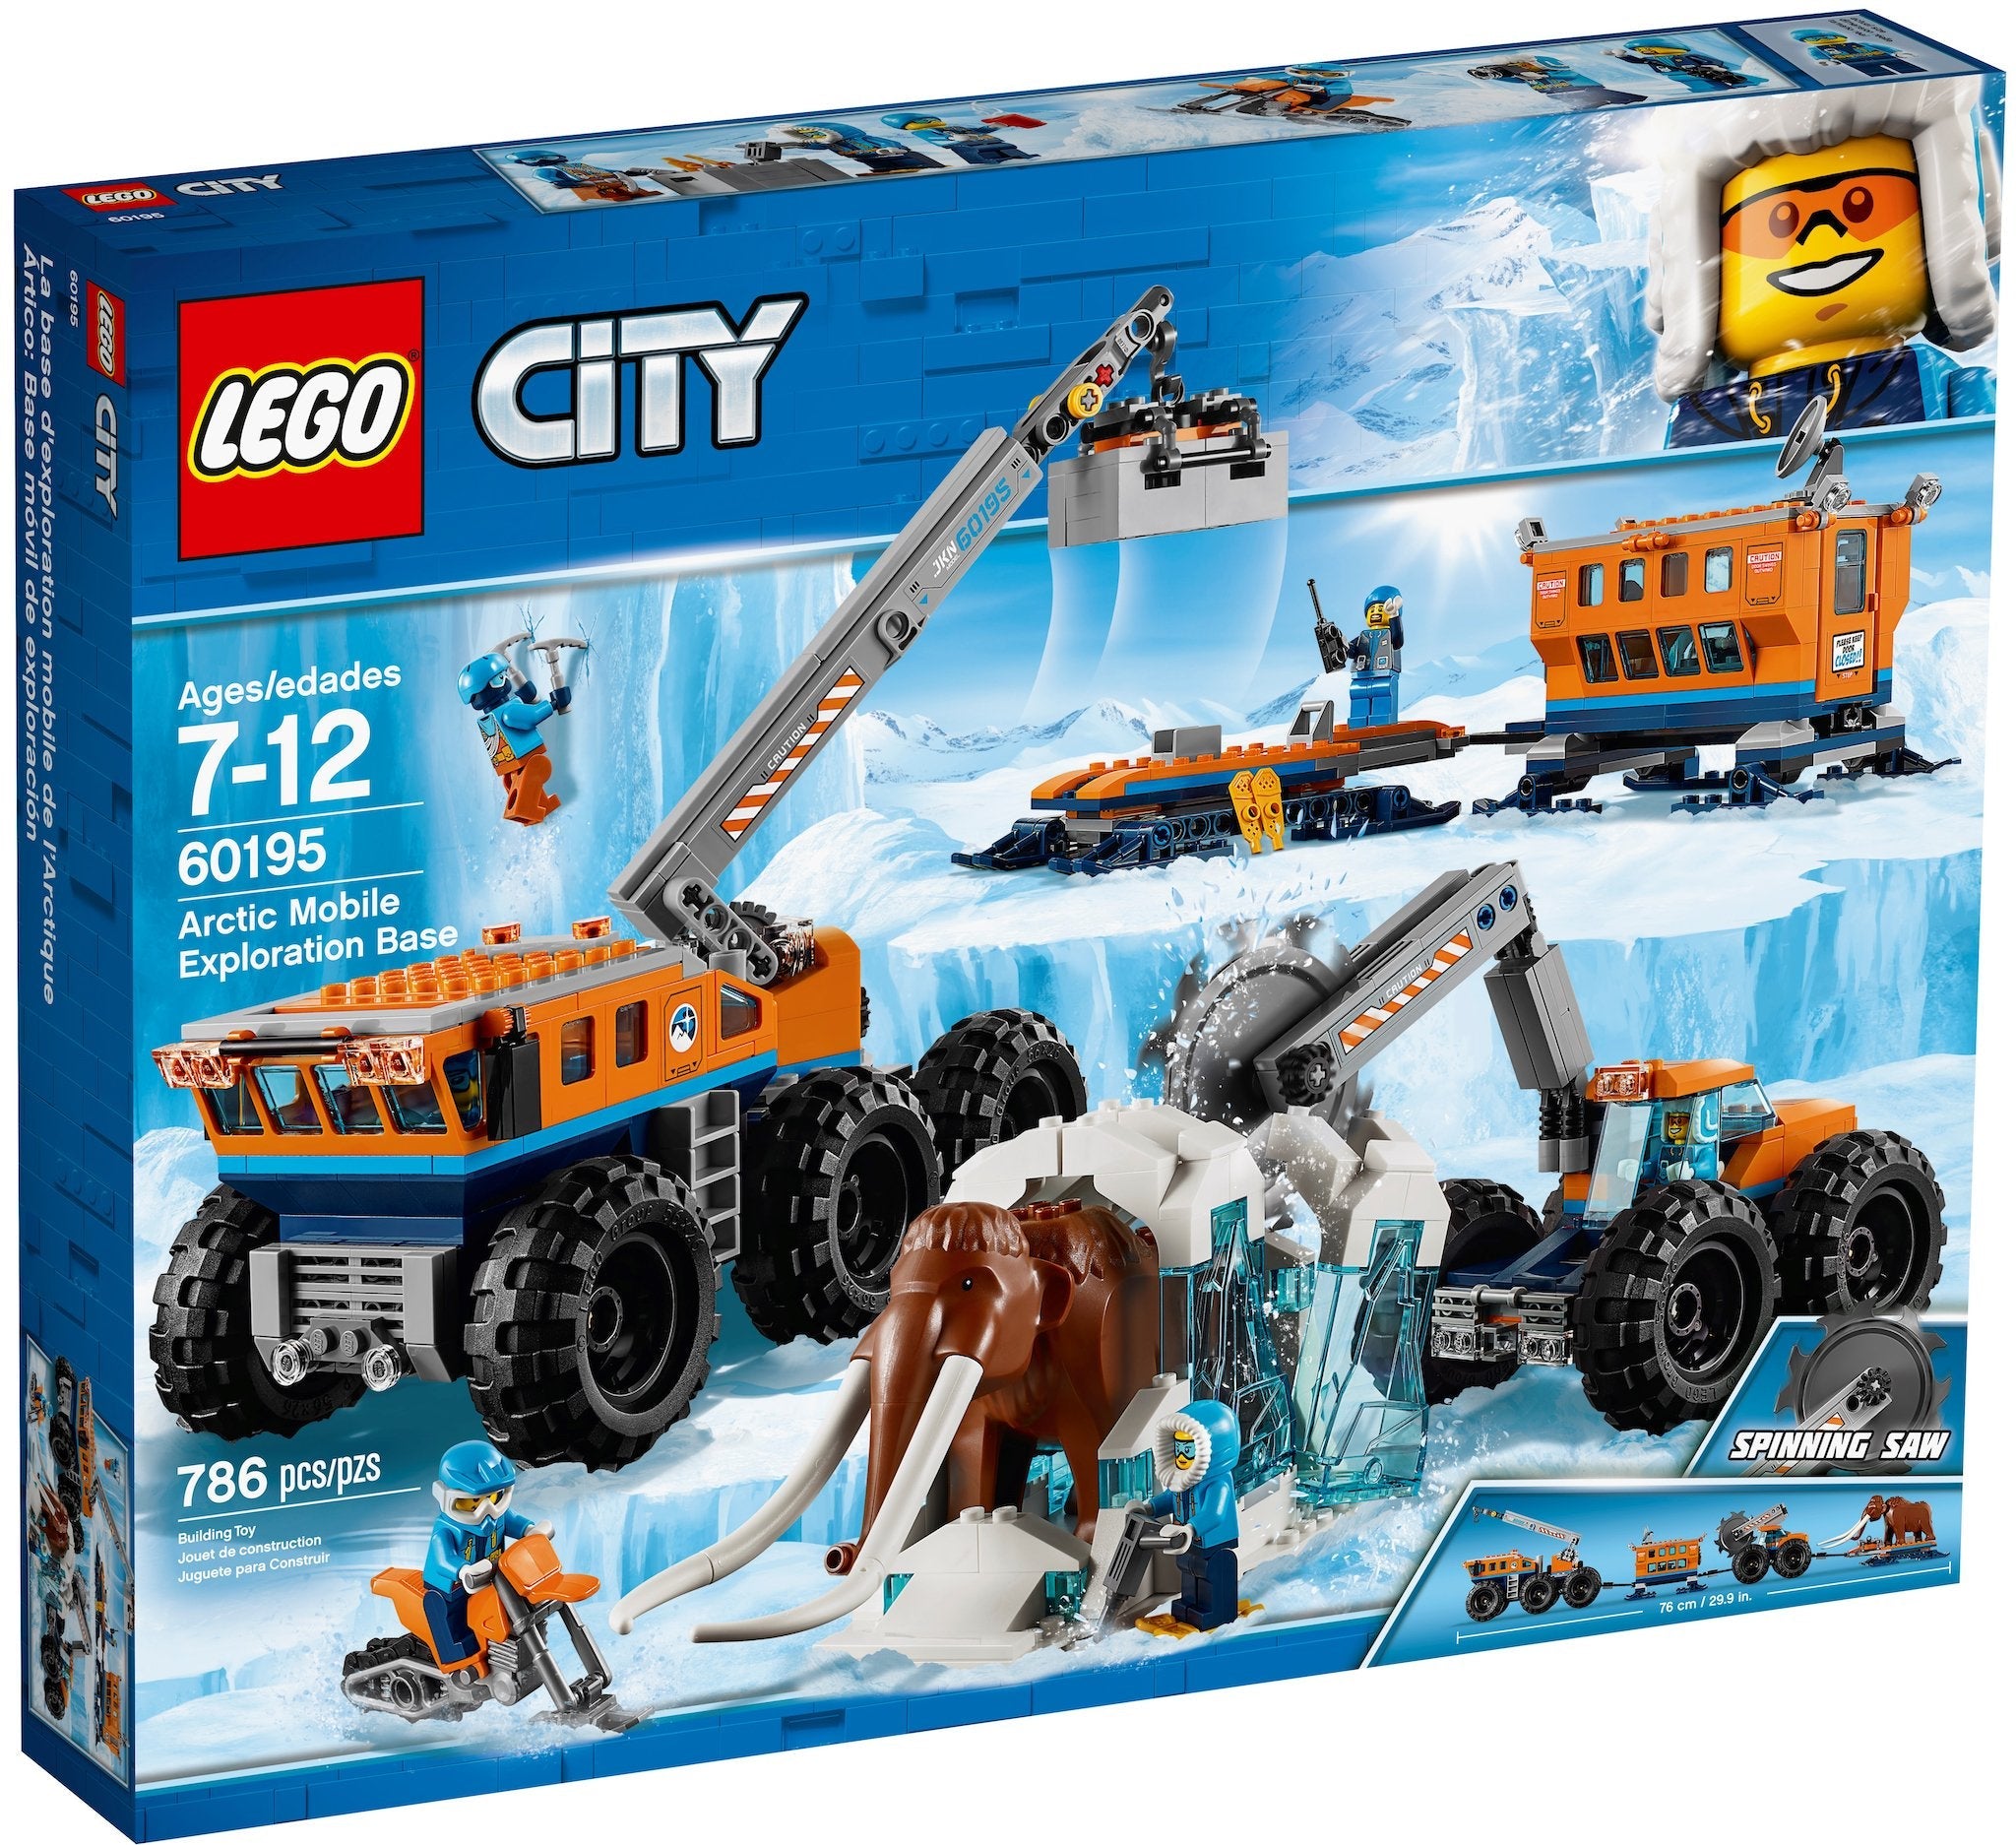 LEGO City Mobile Arktis Forschungsstation (60195) - im GOLDSTIEN.SHOP verfügbar mit Gratisversand ab Schweizer Lager! (5702016109481)